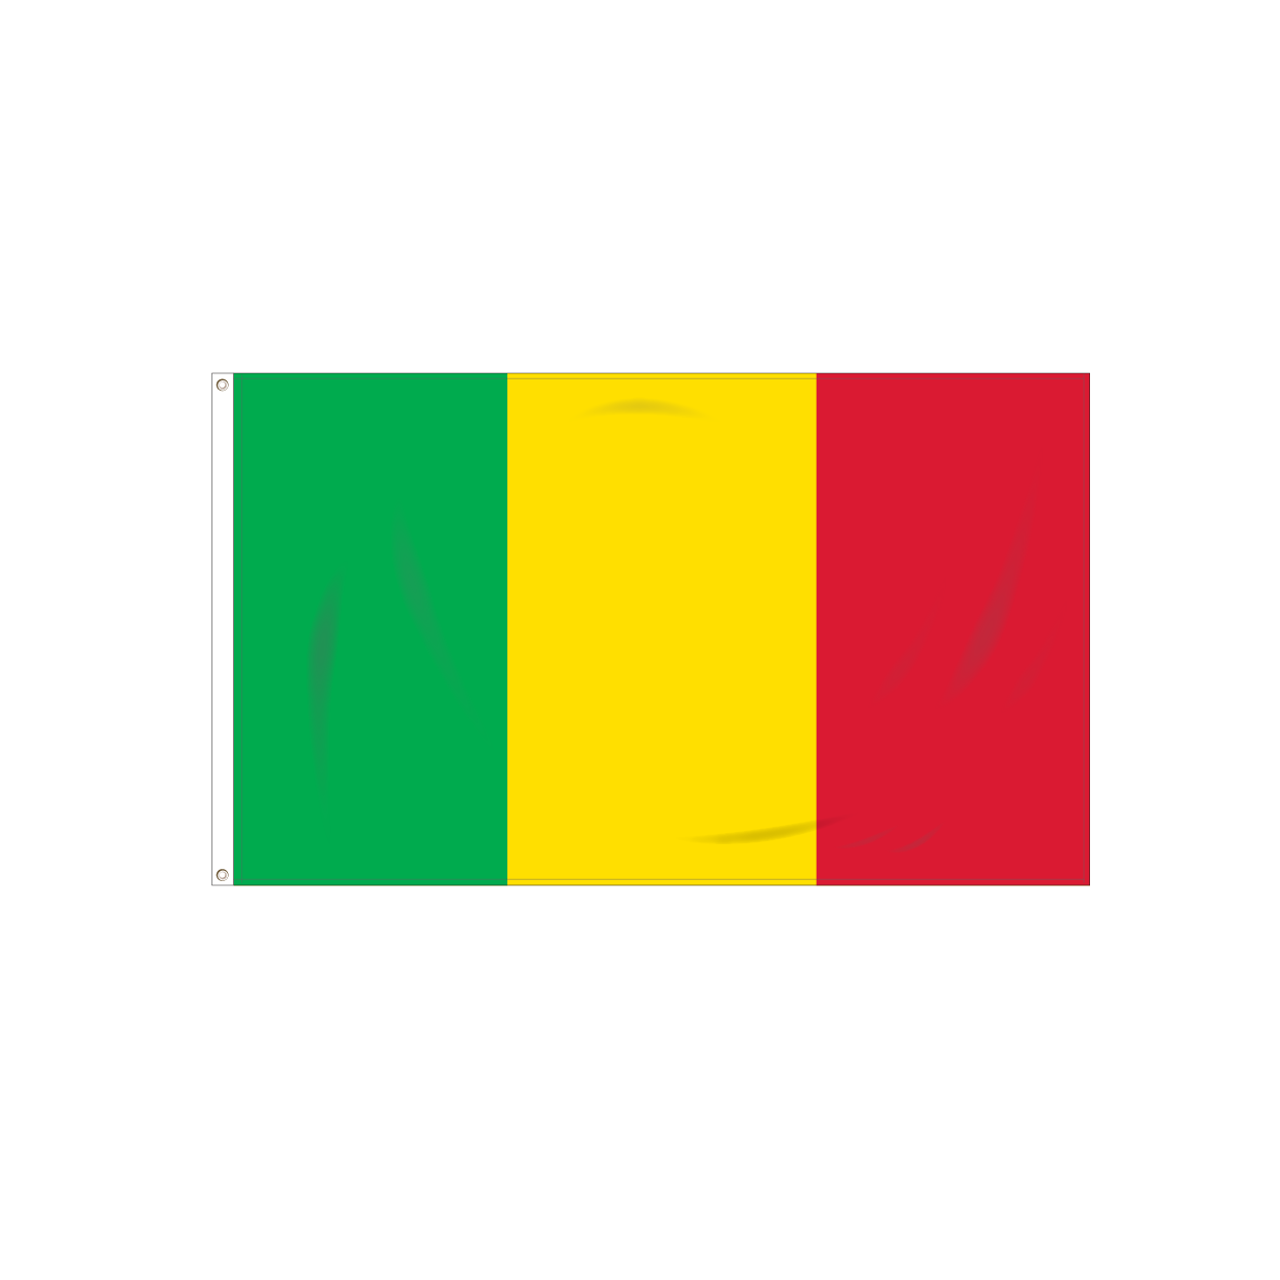 Mali : Un pays, deux façons de porter le drapeau national